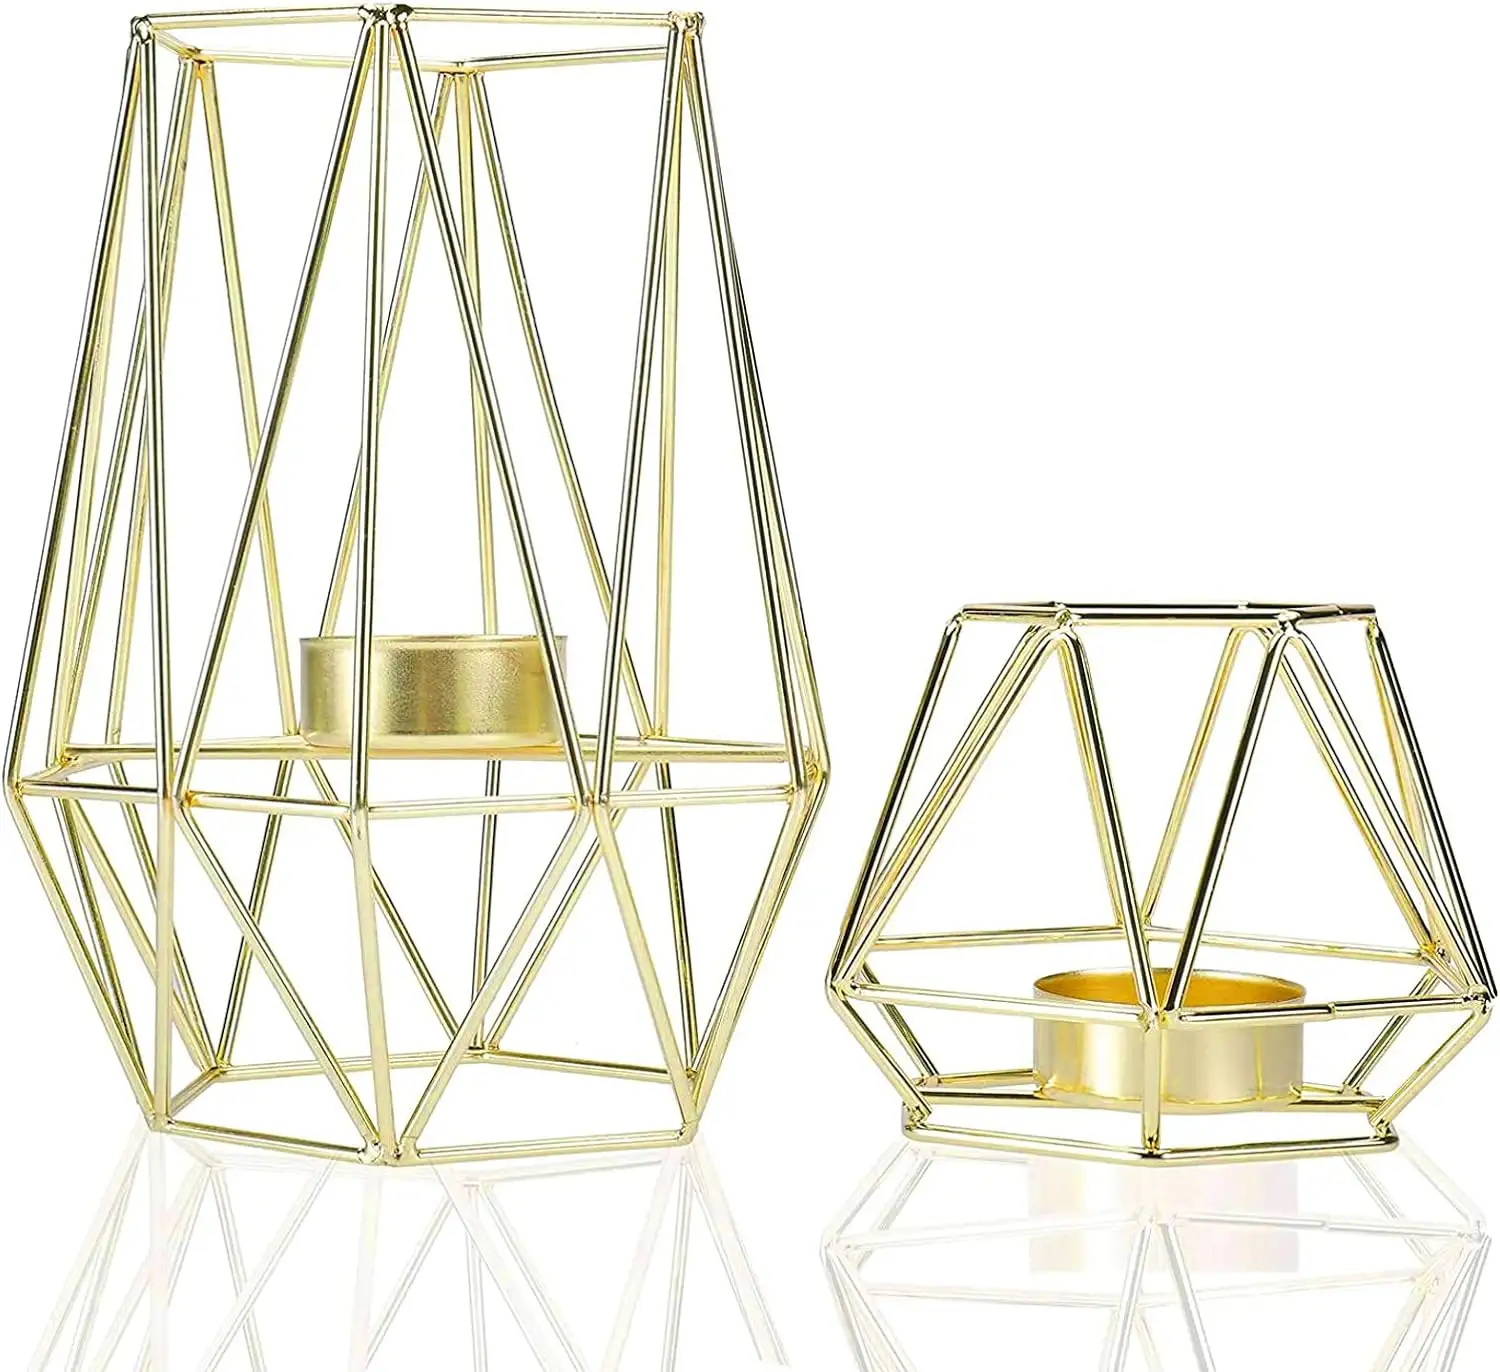 テーブル装飾用メタルワイヤーアイアンティーライトキャンドルホルダーリビングルーム浴室装飾ゴールド幾何学的形状ホルダー2個セット